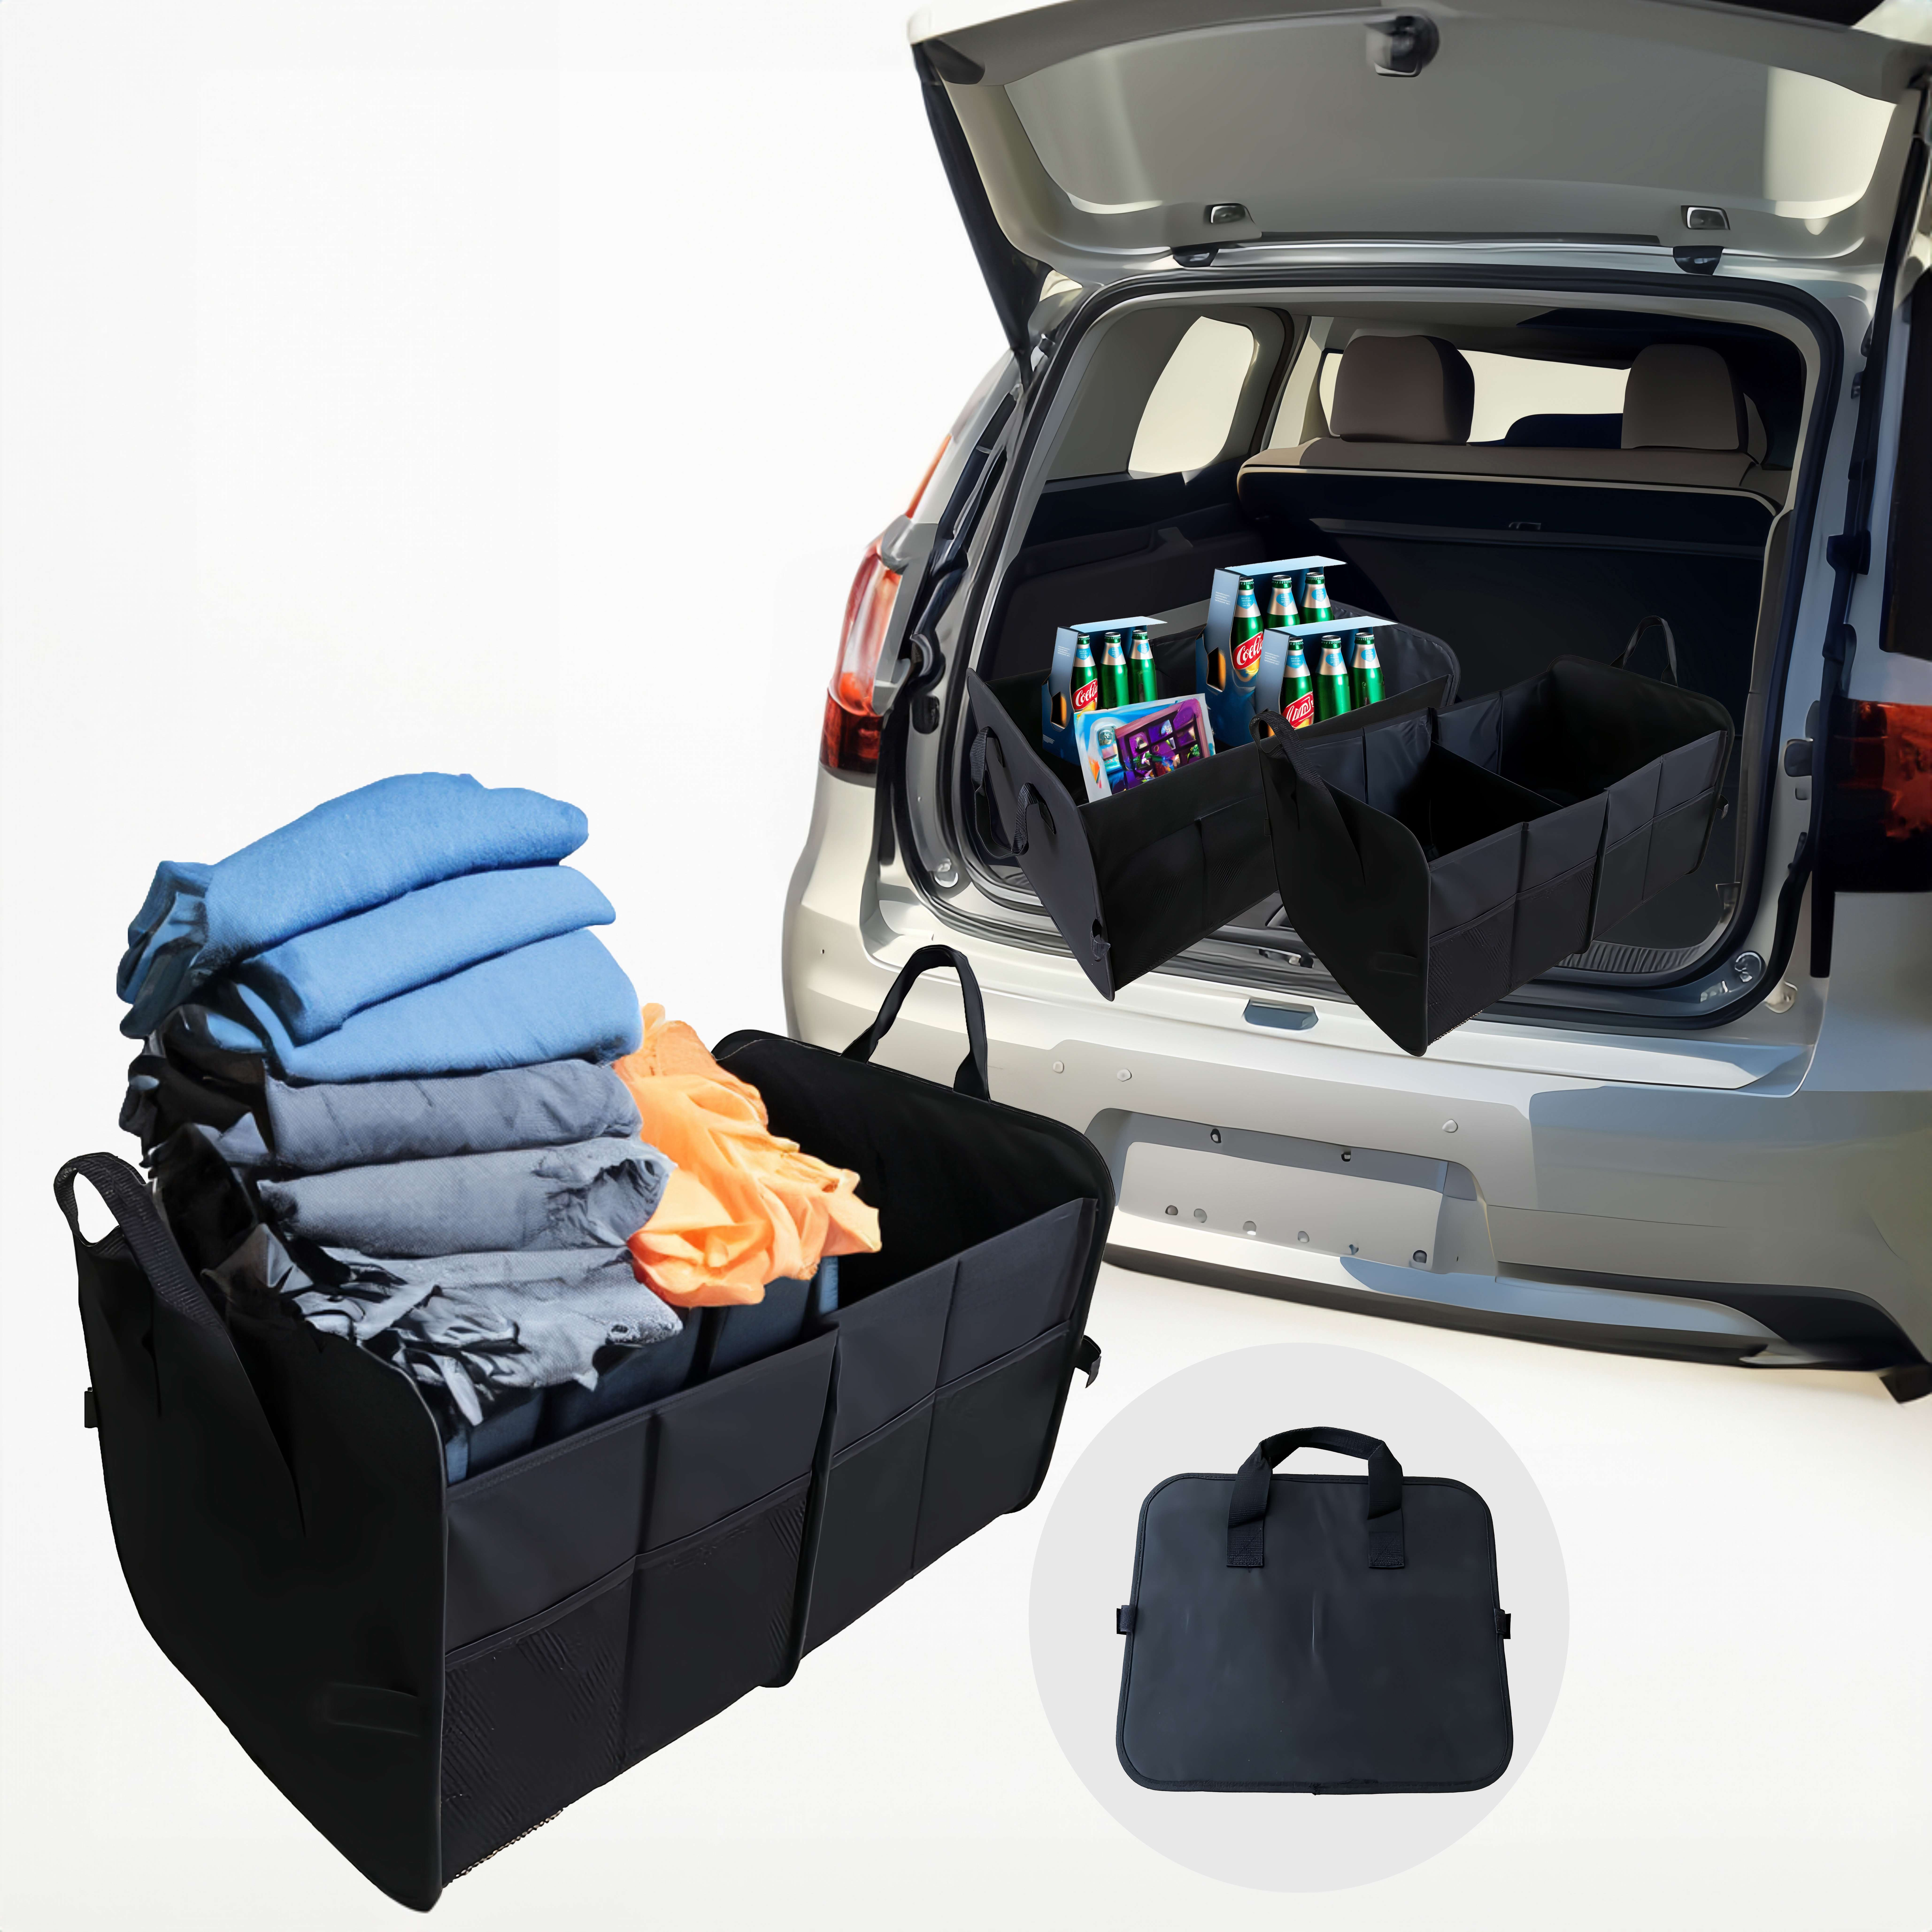 Auto-Kofferraum-Organizer-Tasche, Camping-Outdoor-Müllbeutel, faltbare